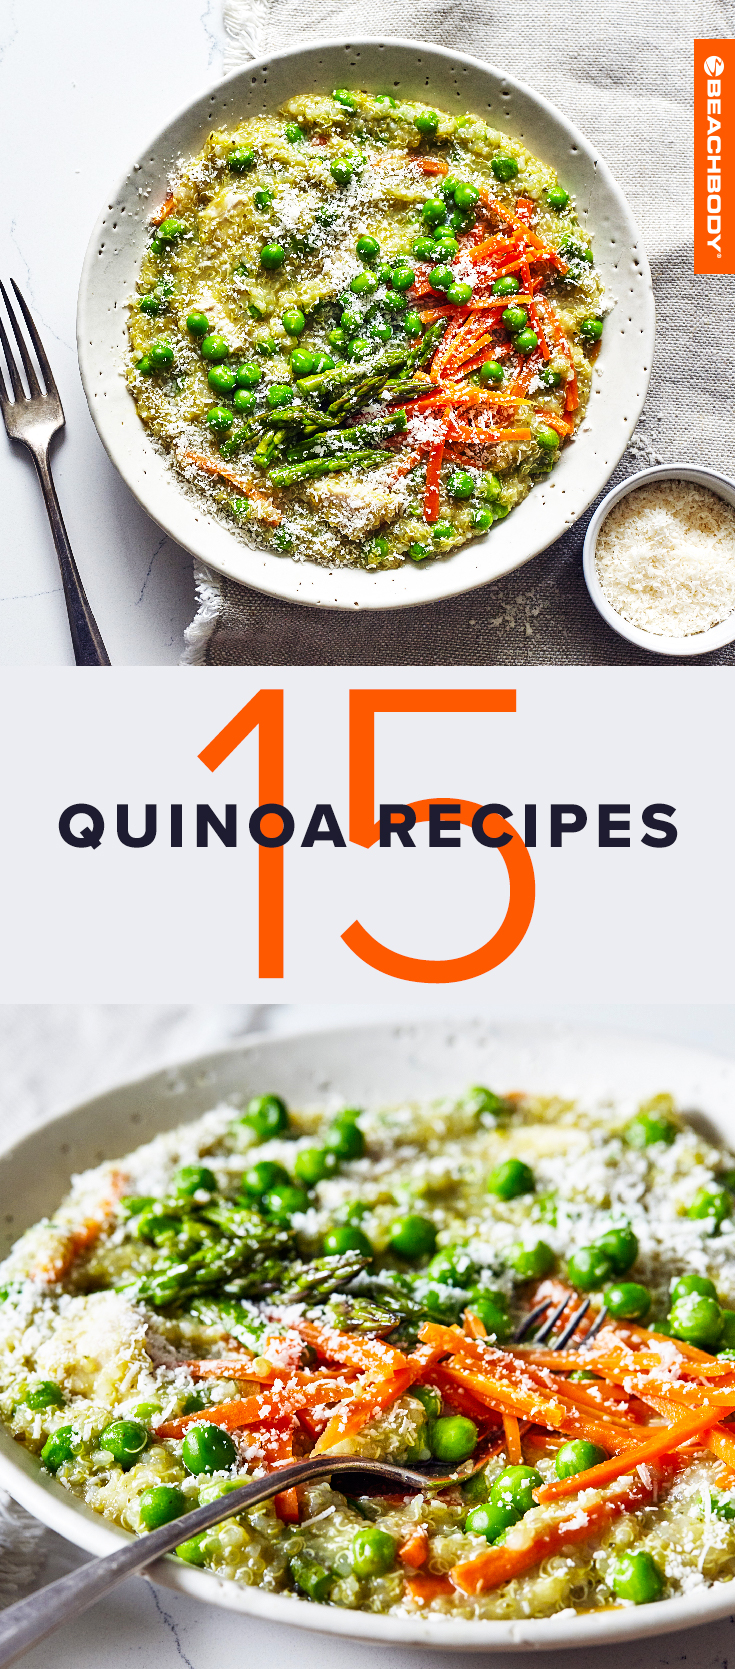 Quinoa Recipes to Meal Prep